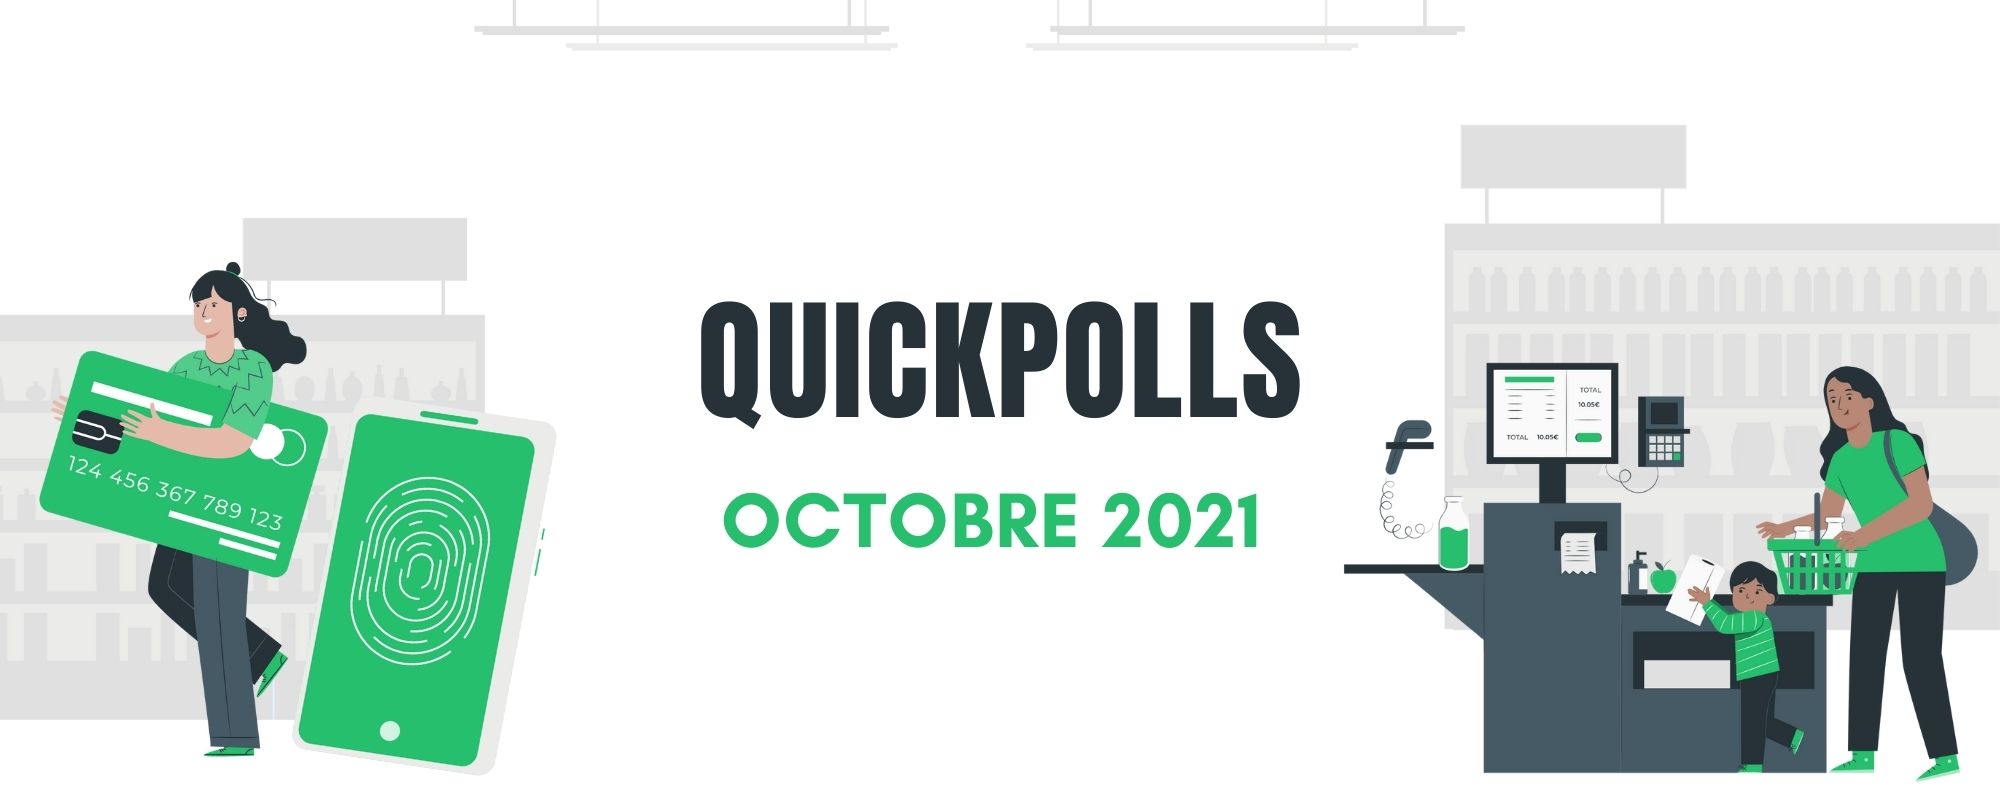 Quickpolls - octobre 2021